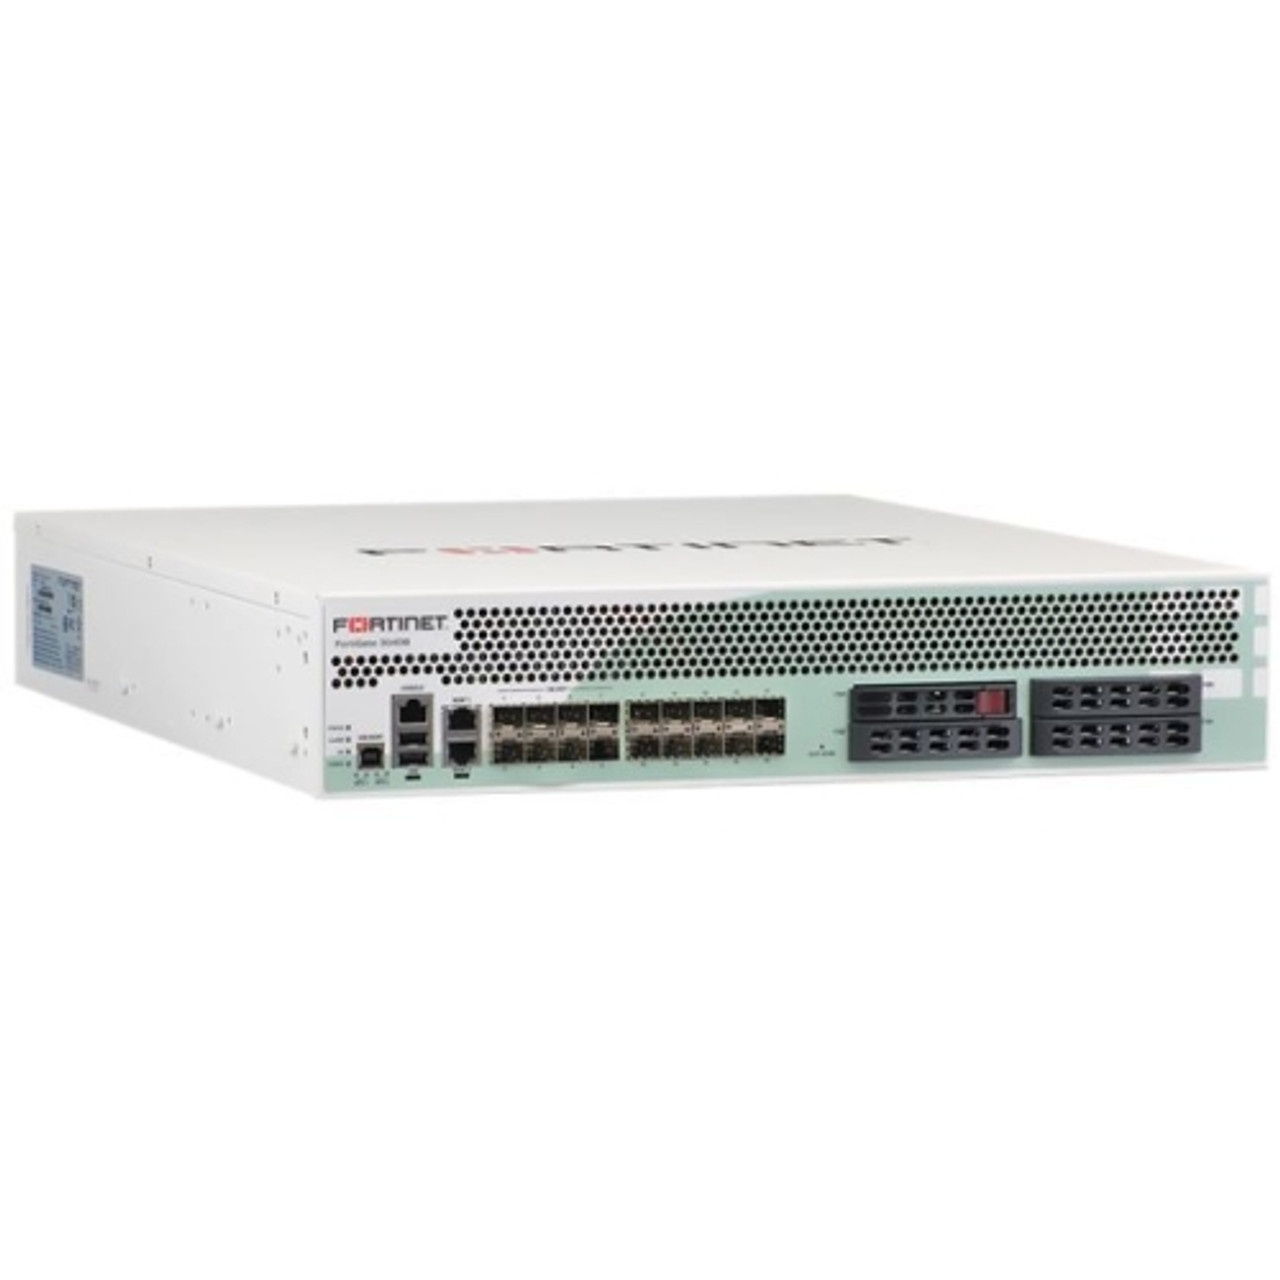 FG-3040B-DC Fortinet Security Appliance Ethernet Fast Ethernet Gigabit Ethernet